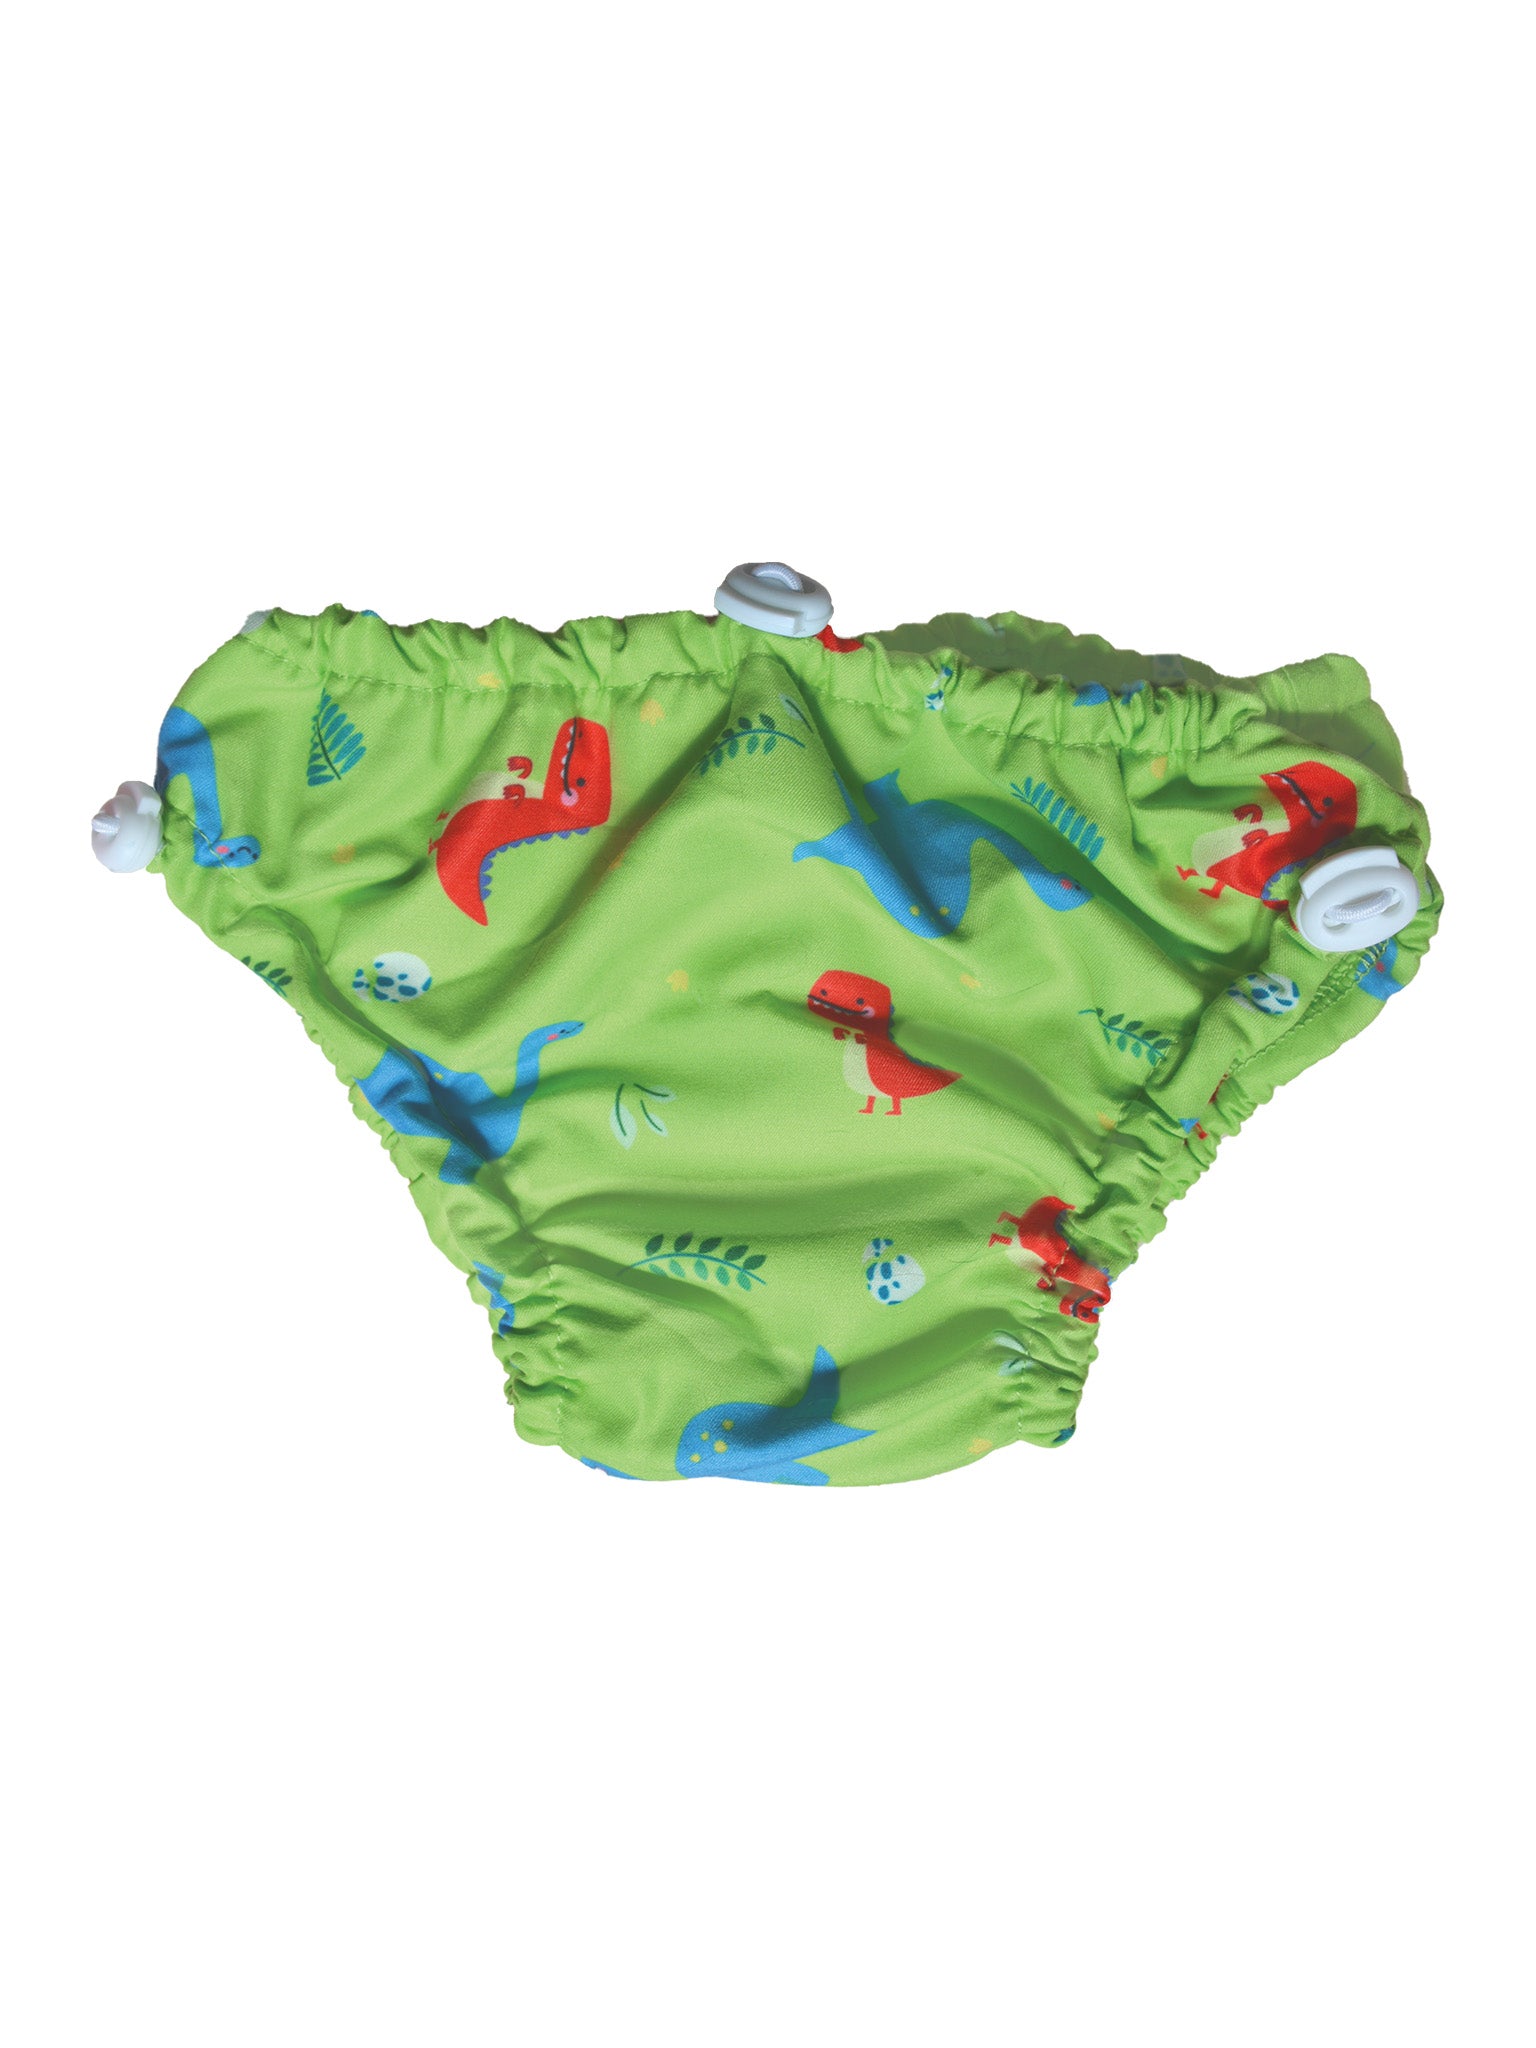 Adjustable Swim Diaper